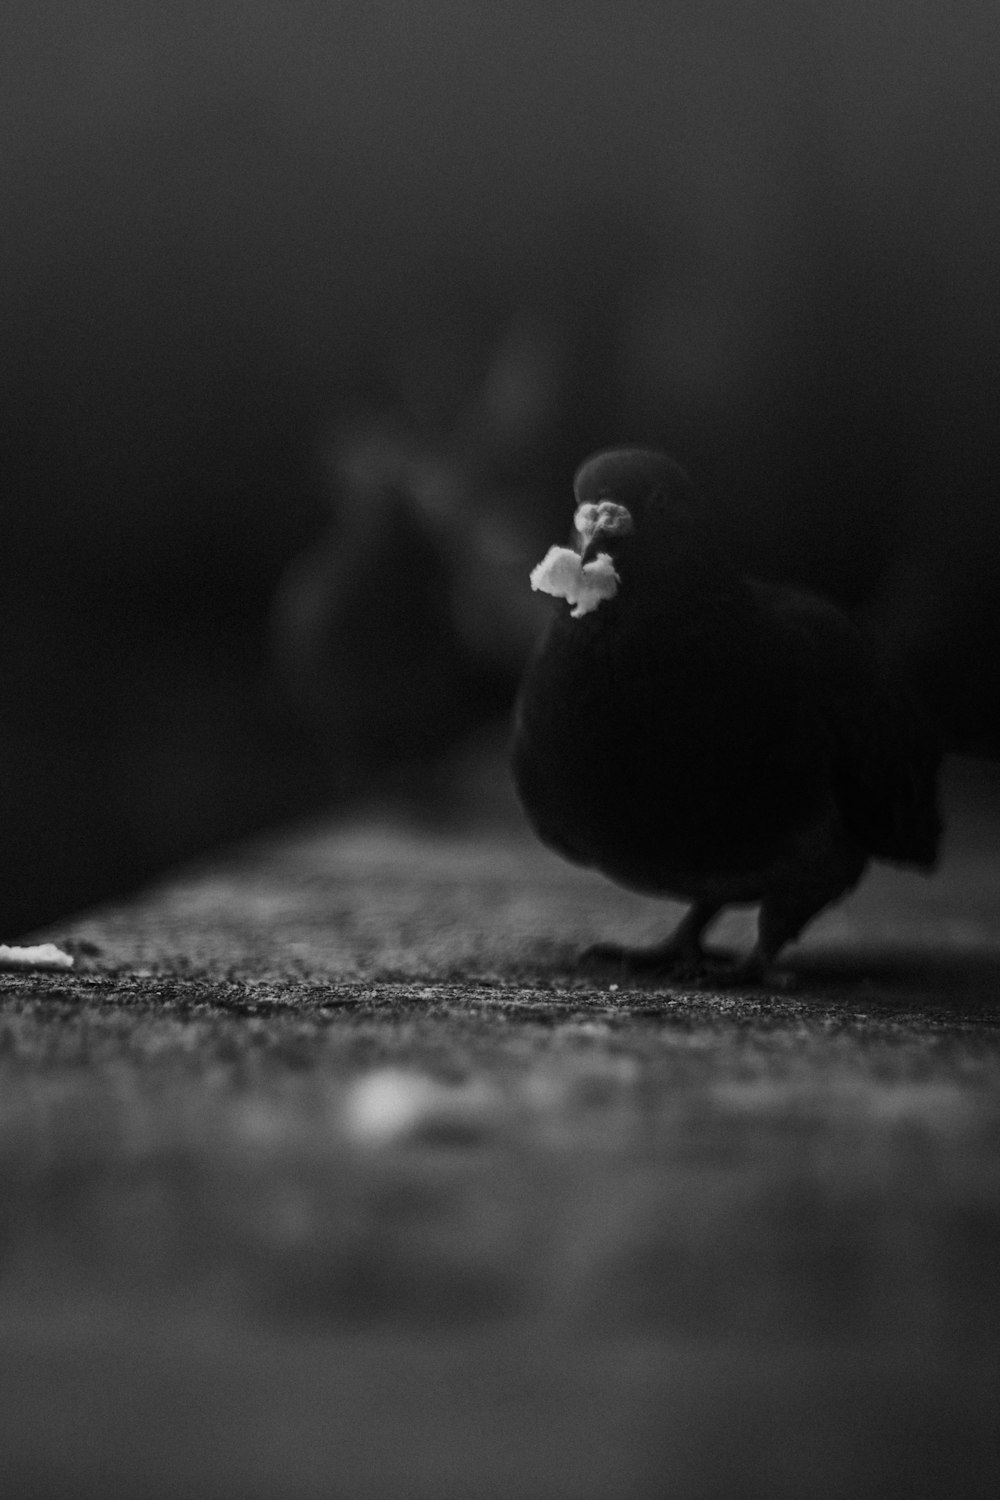 oiseau noir et blanc sur surface noire et blanche